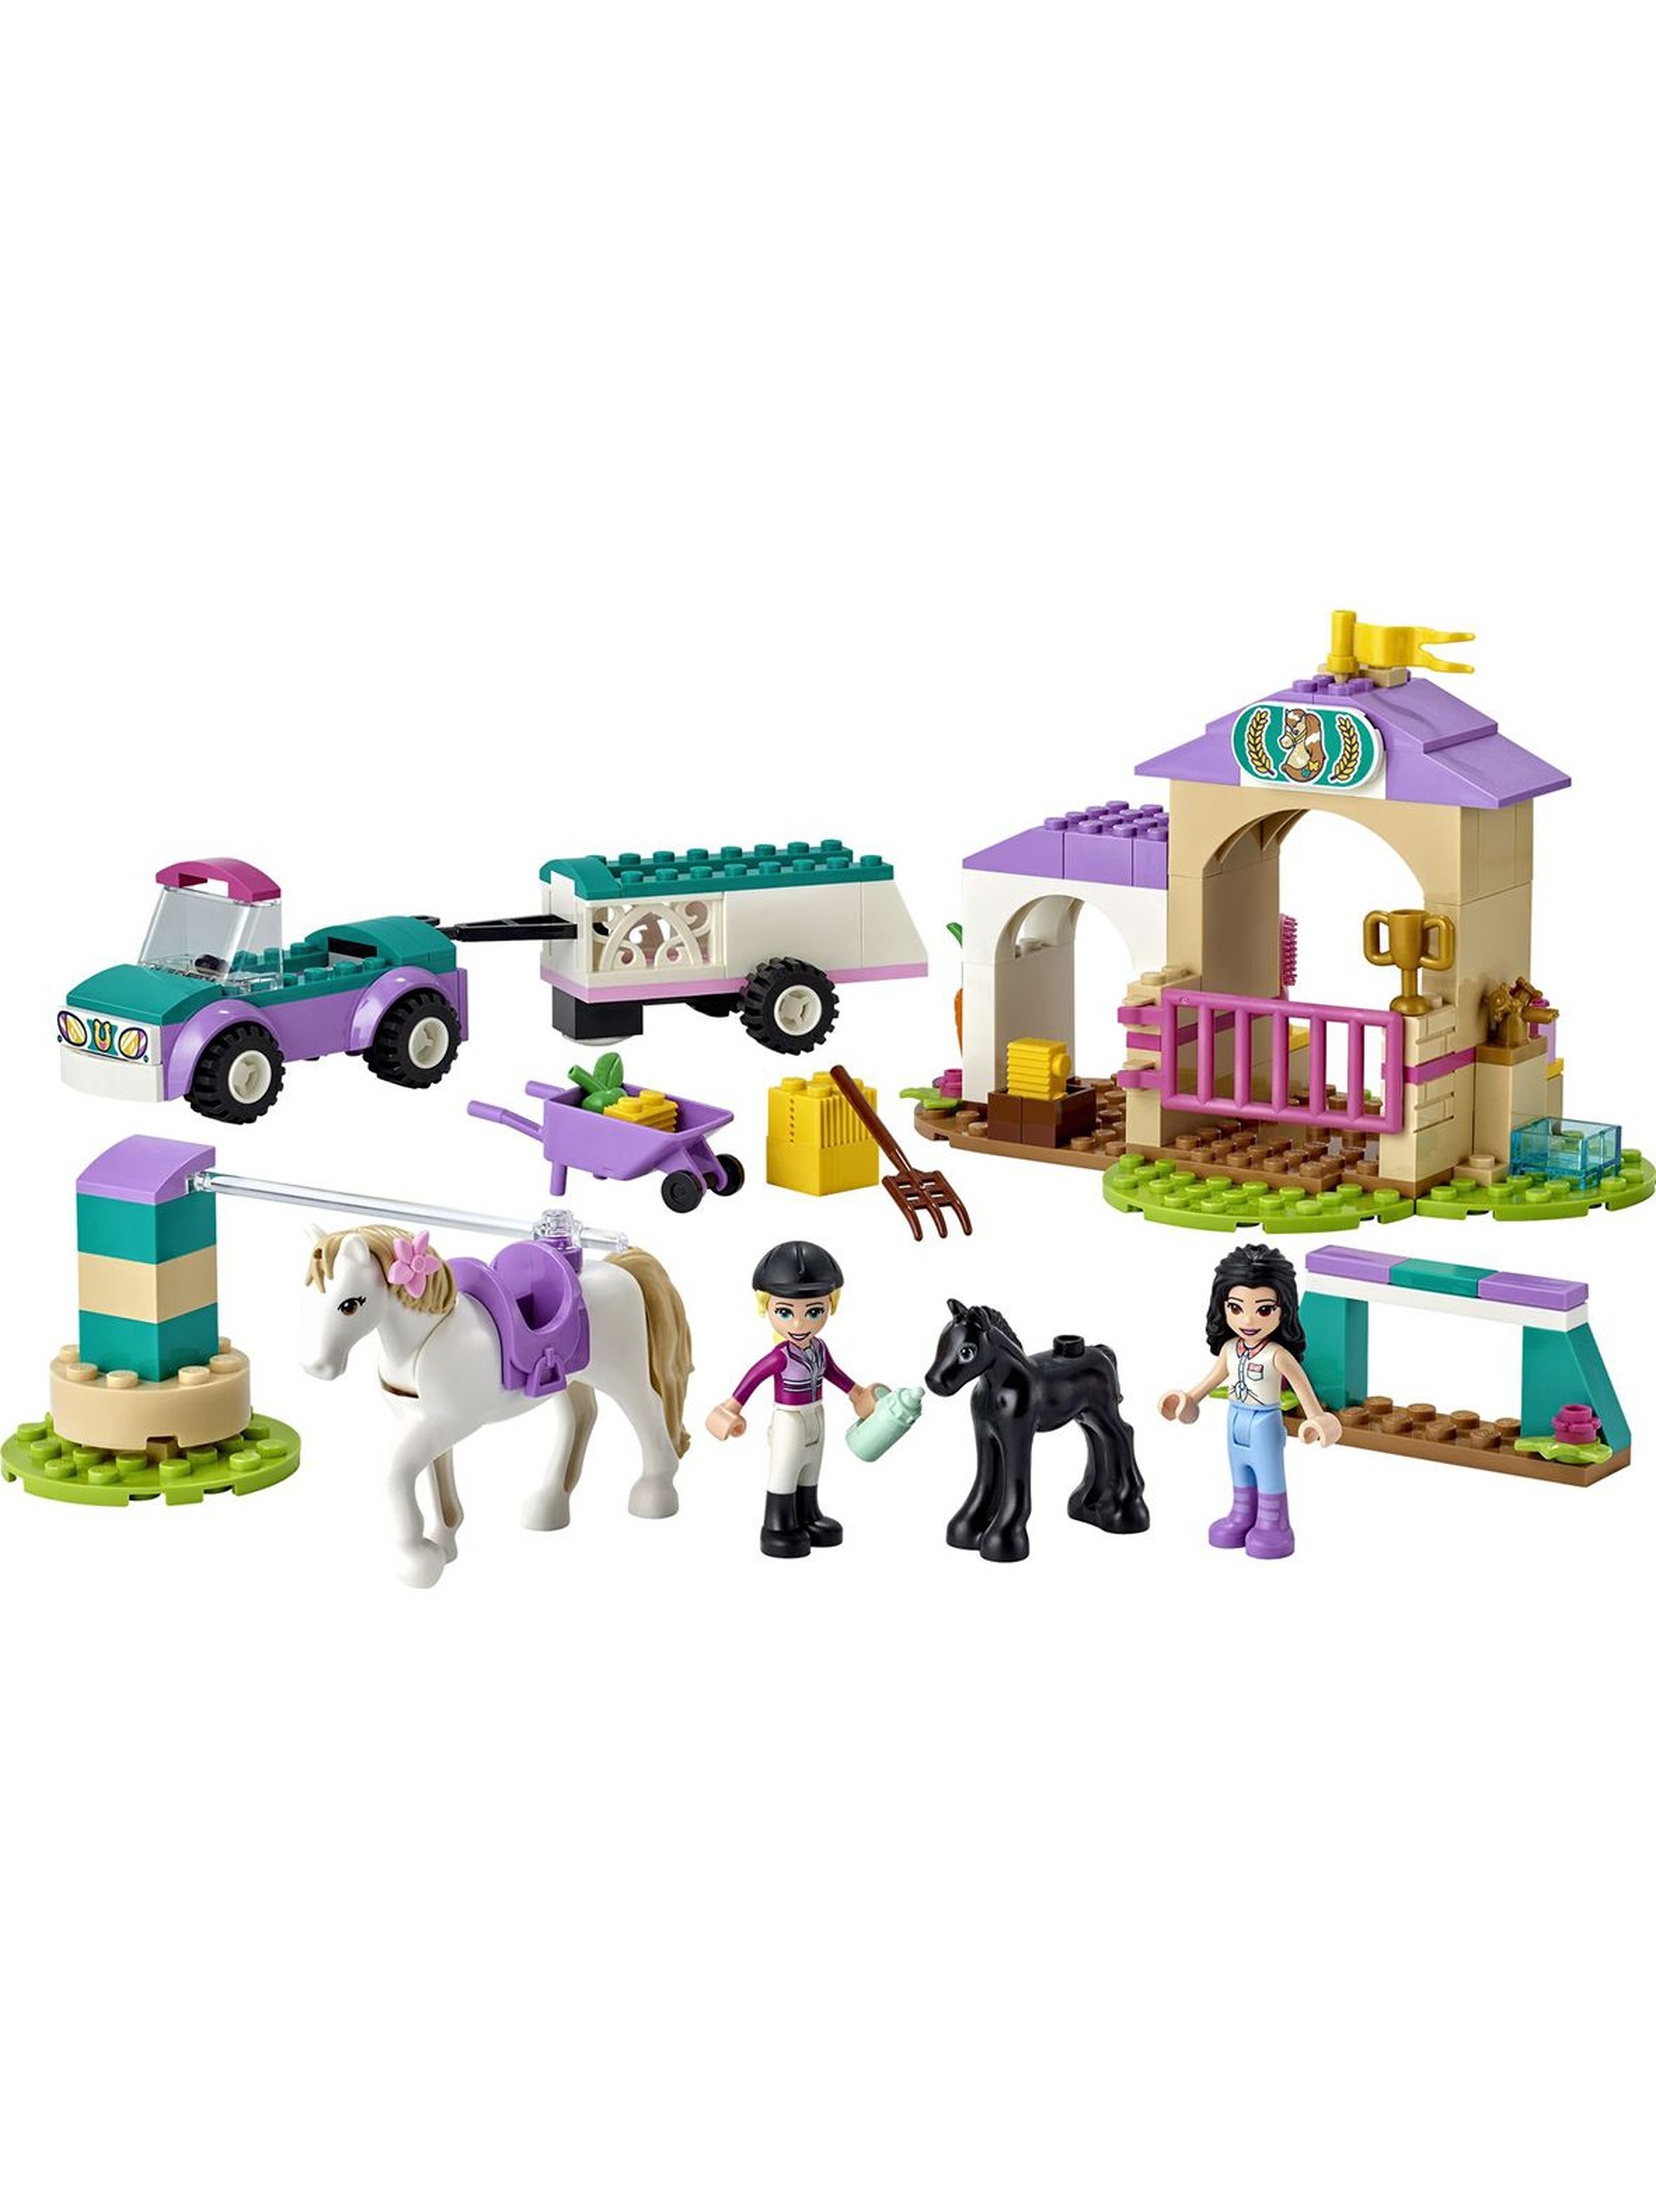 LEGO Friends - Szkółka jeździecka i przyczepa dla konia 41441 - 148 elementów, wiek 4+